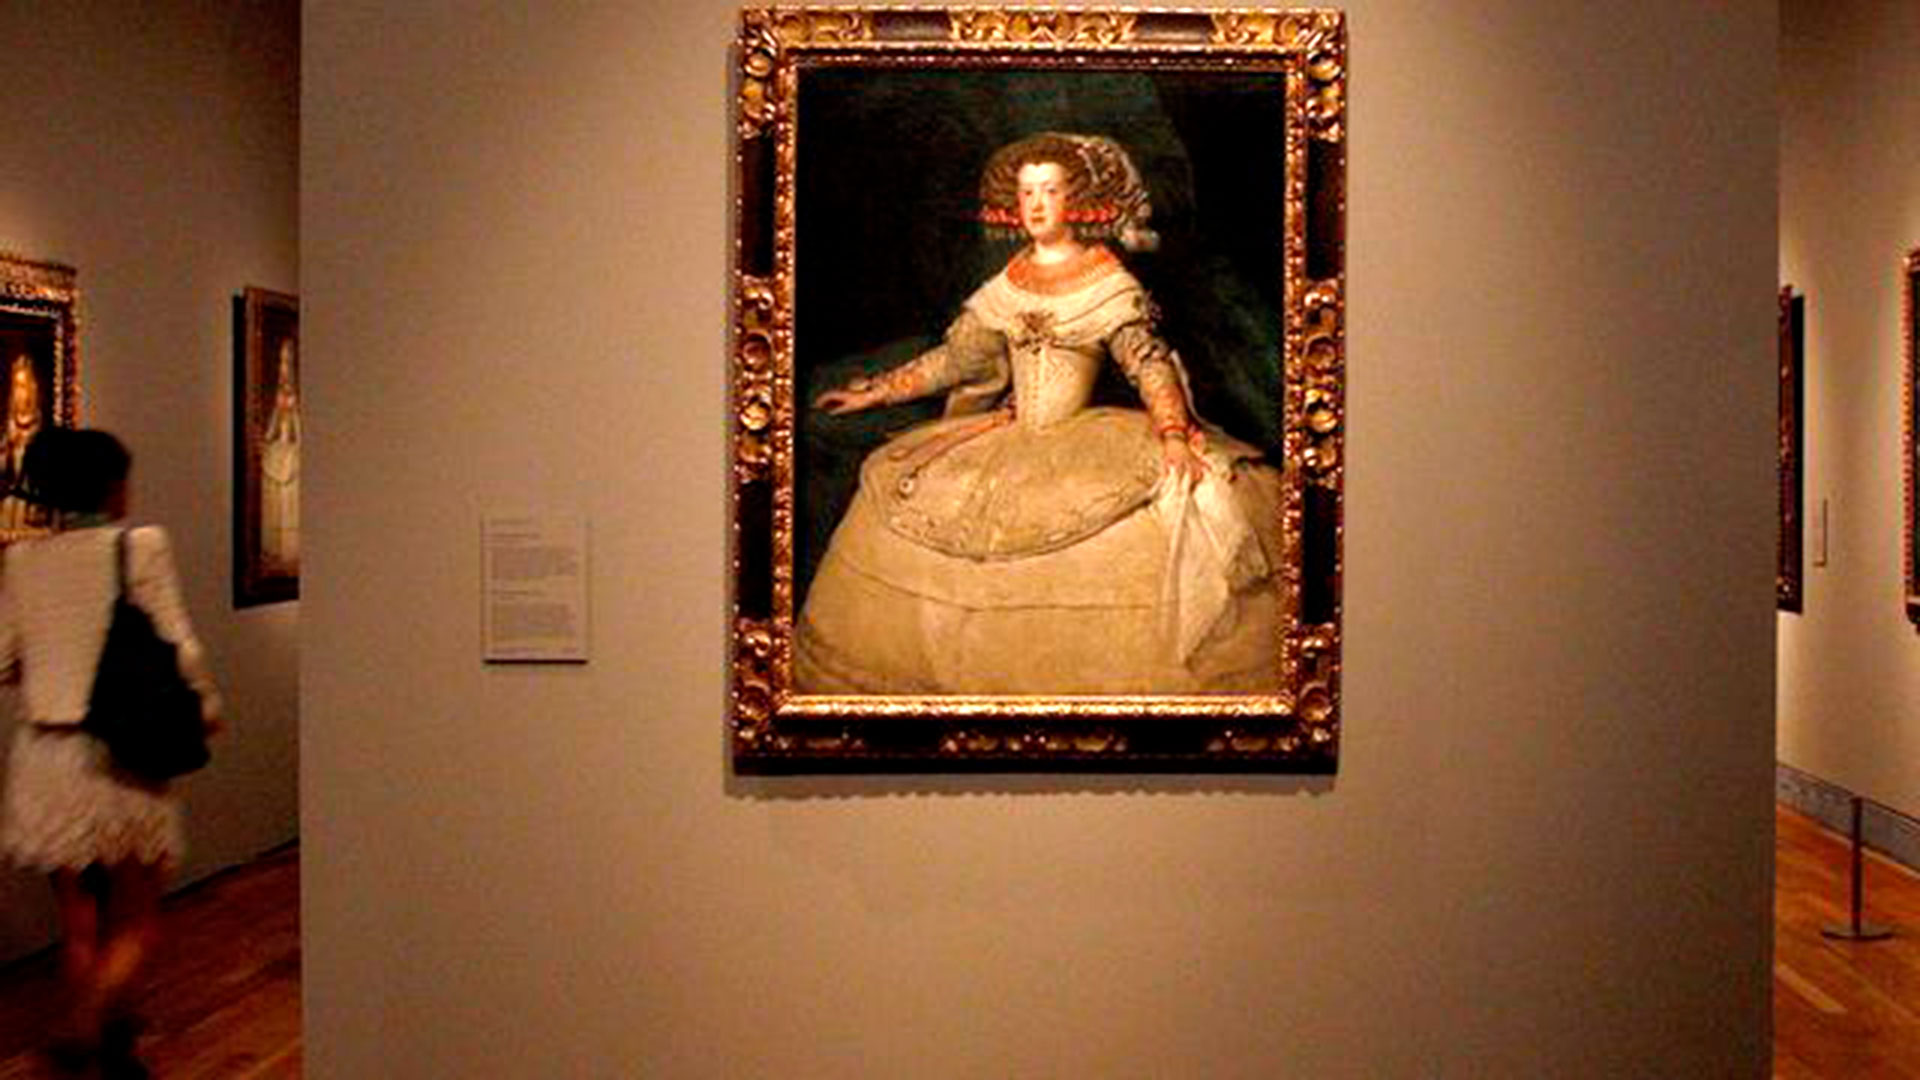 El cuadro 'Retrato de Mariana de Austria' de Velázquez, en el Museo del Prado. (EFE/Ballesteros)